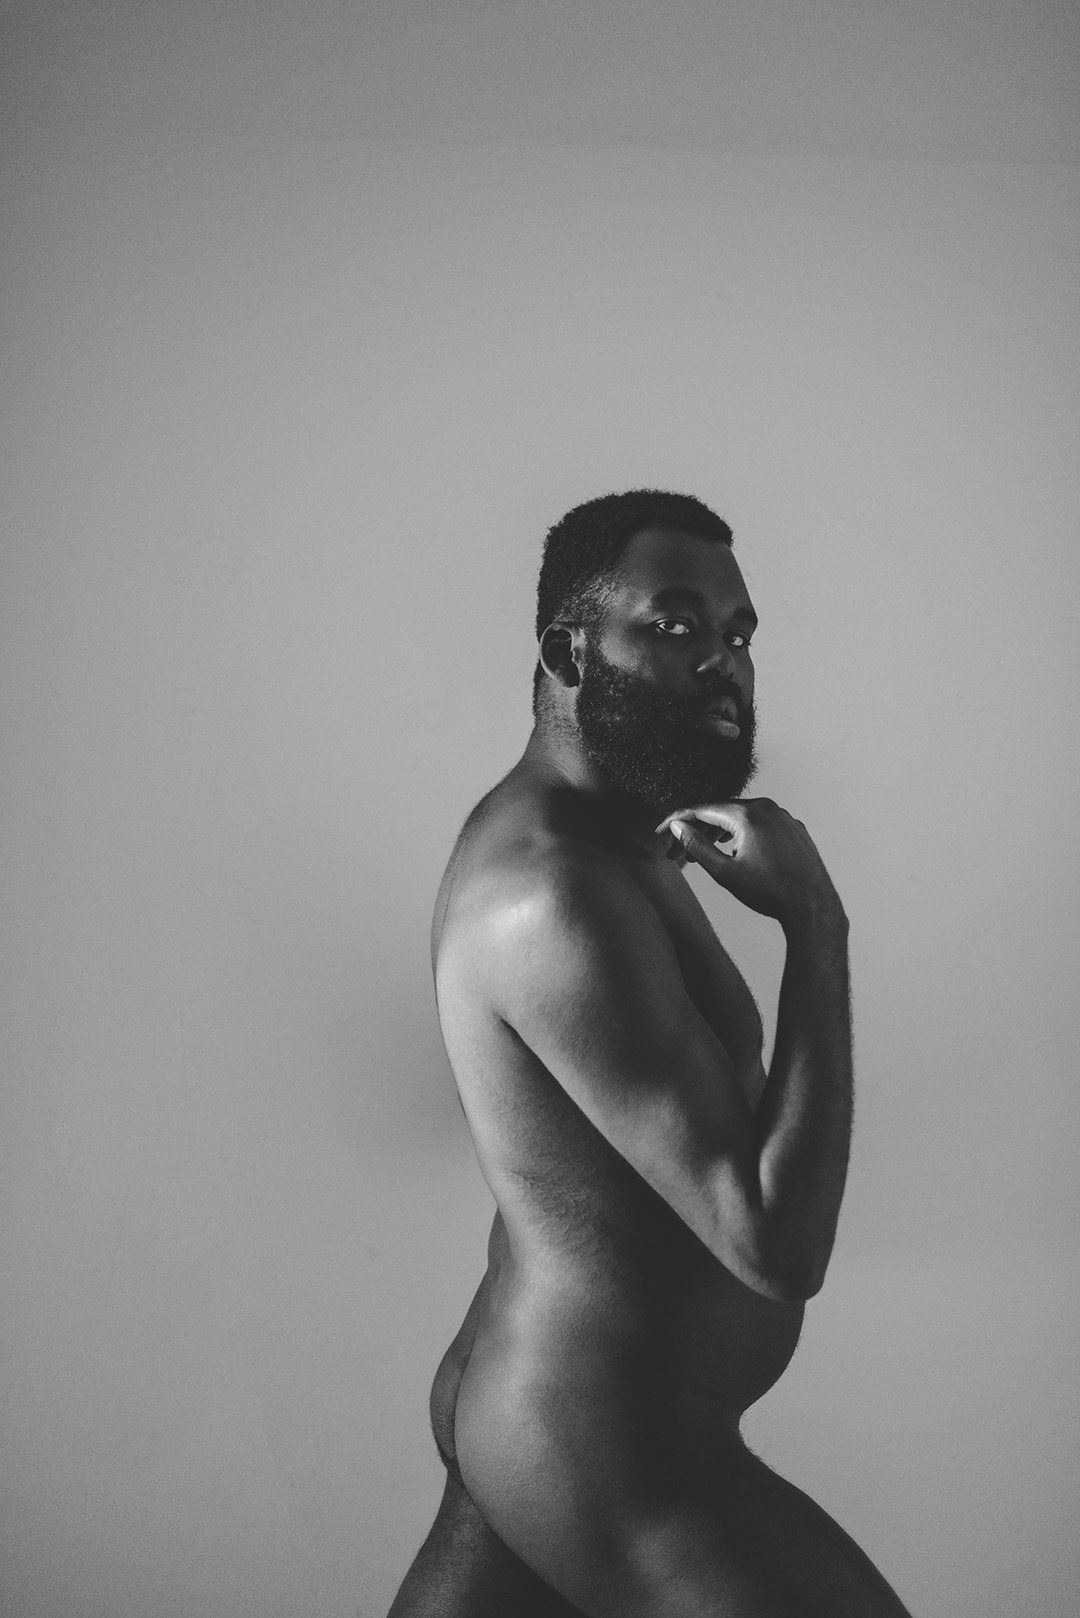 Aqua reccomend Black male nude photography